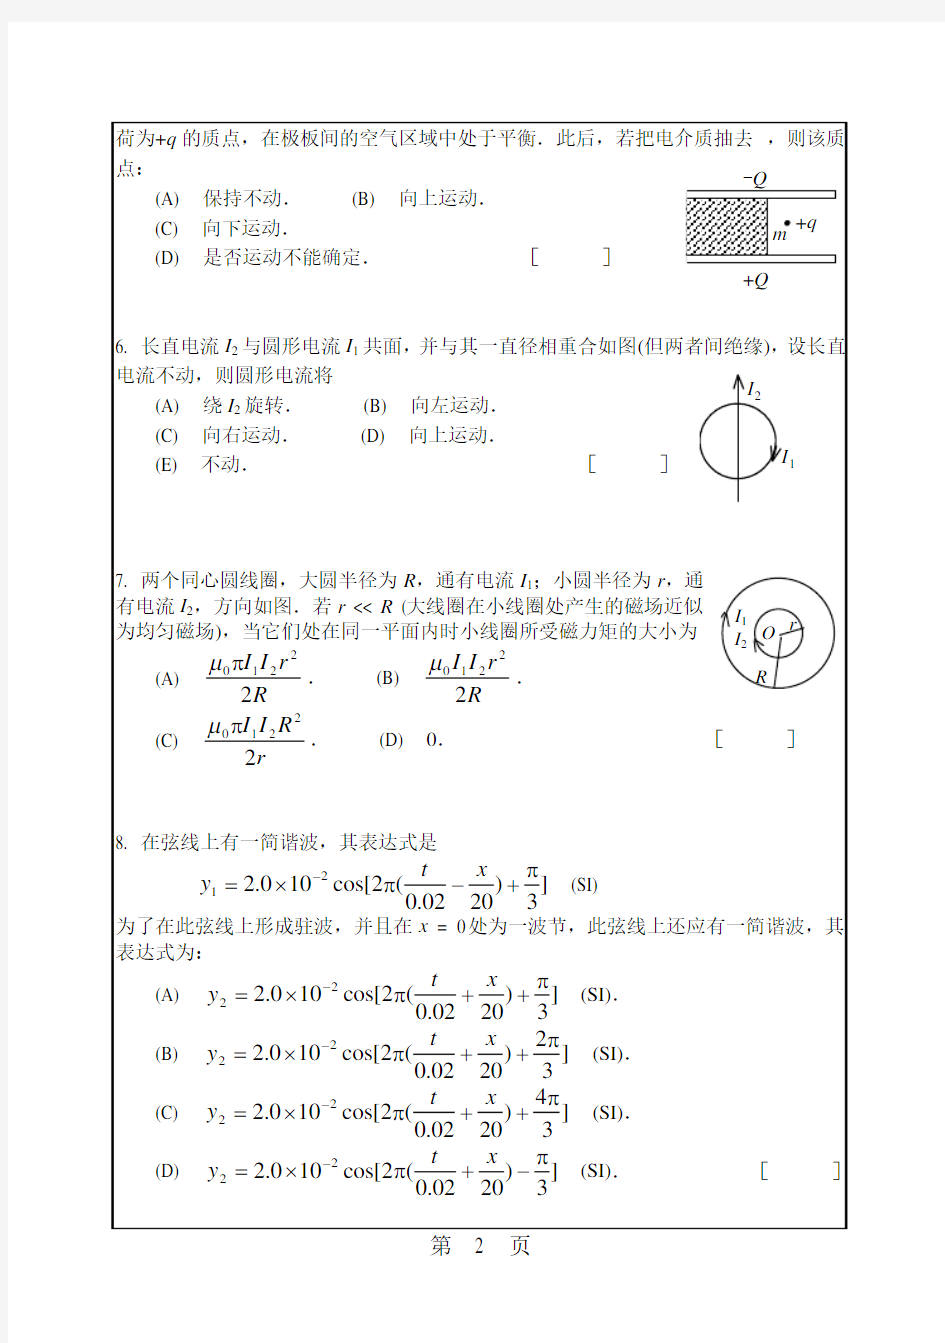 华南理工大学考研试题2016年-2018年860普通物理(含力、热、电、光学)